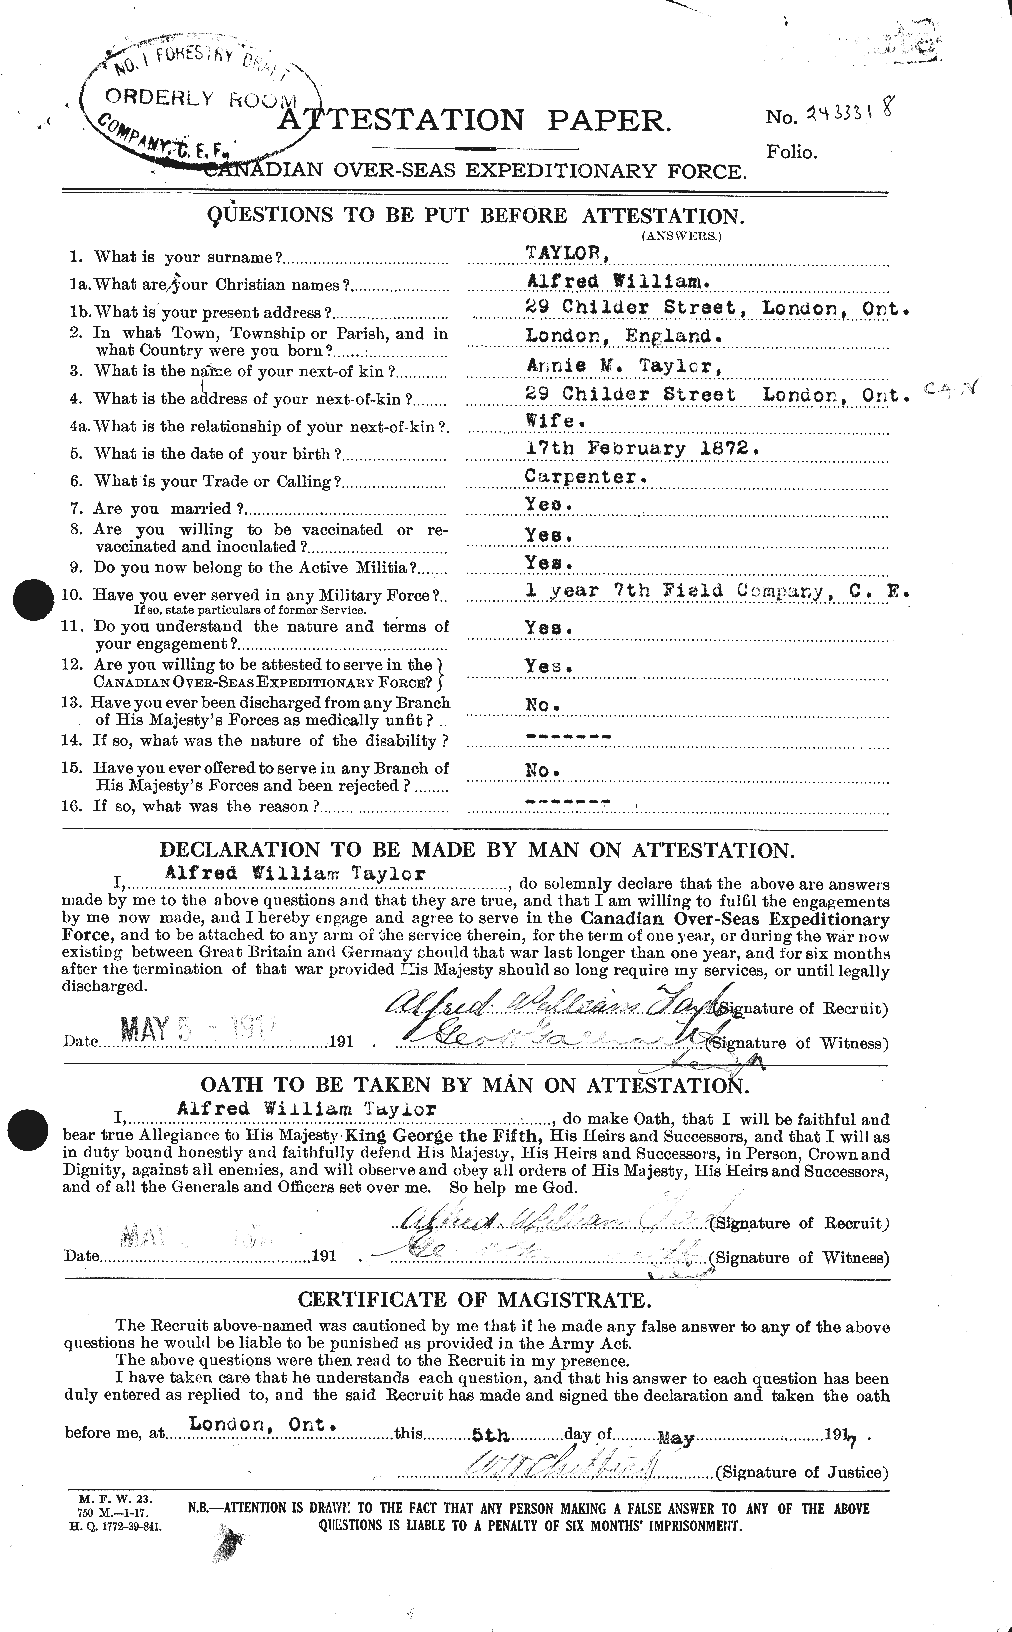 Dossiers du Personnel de la Première Guerre mondiale - CEC 626199a